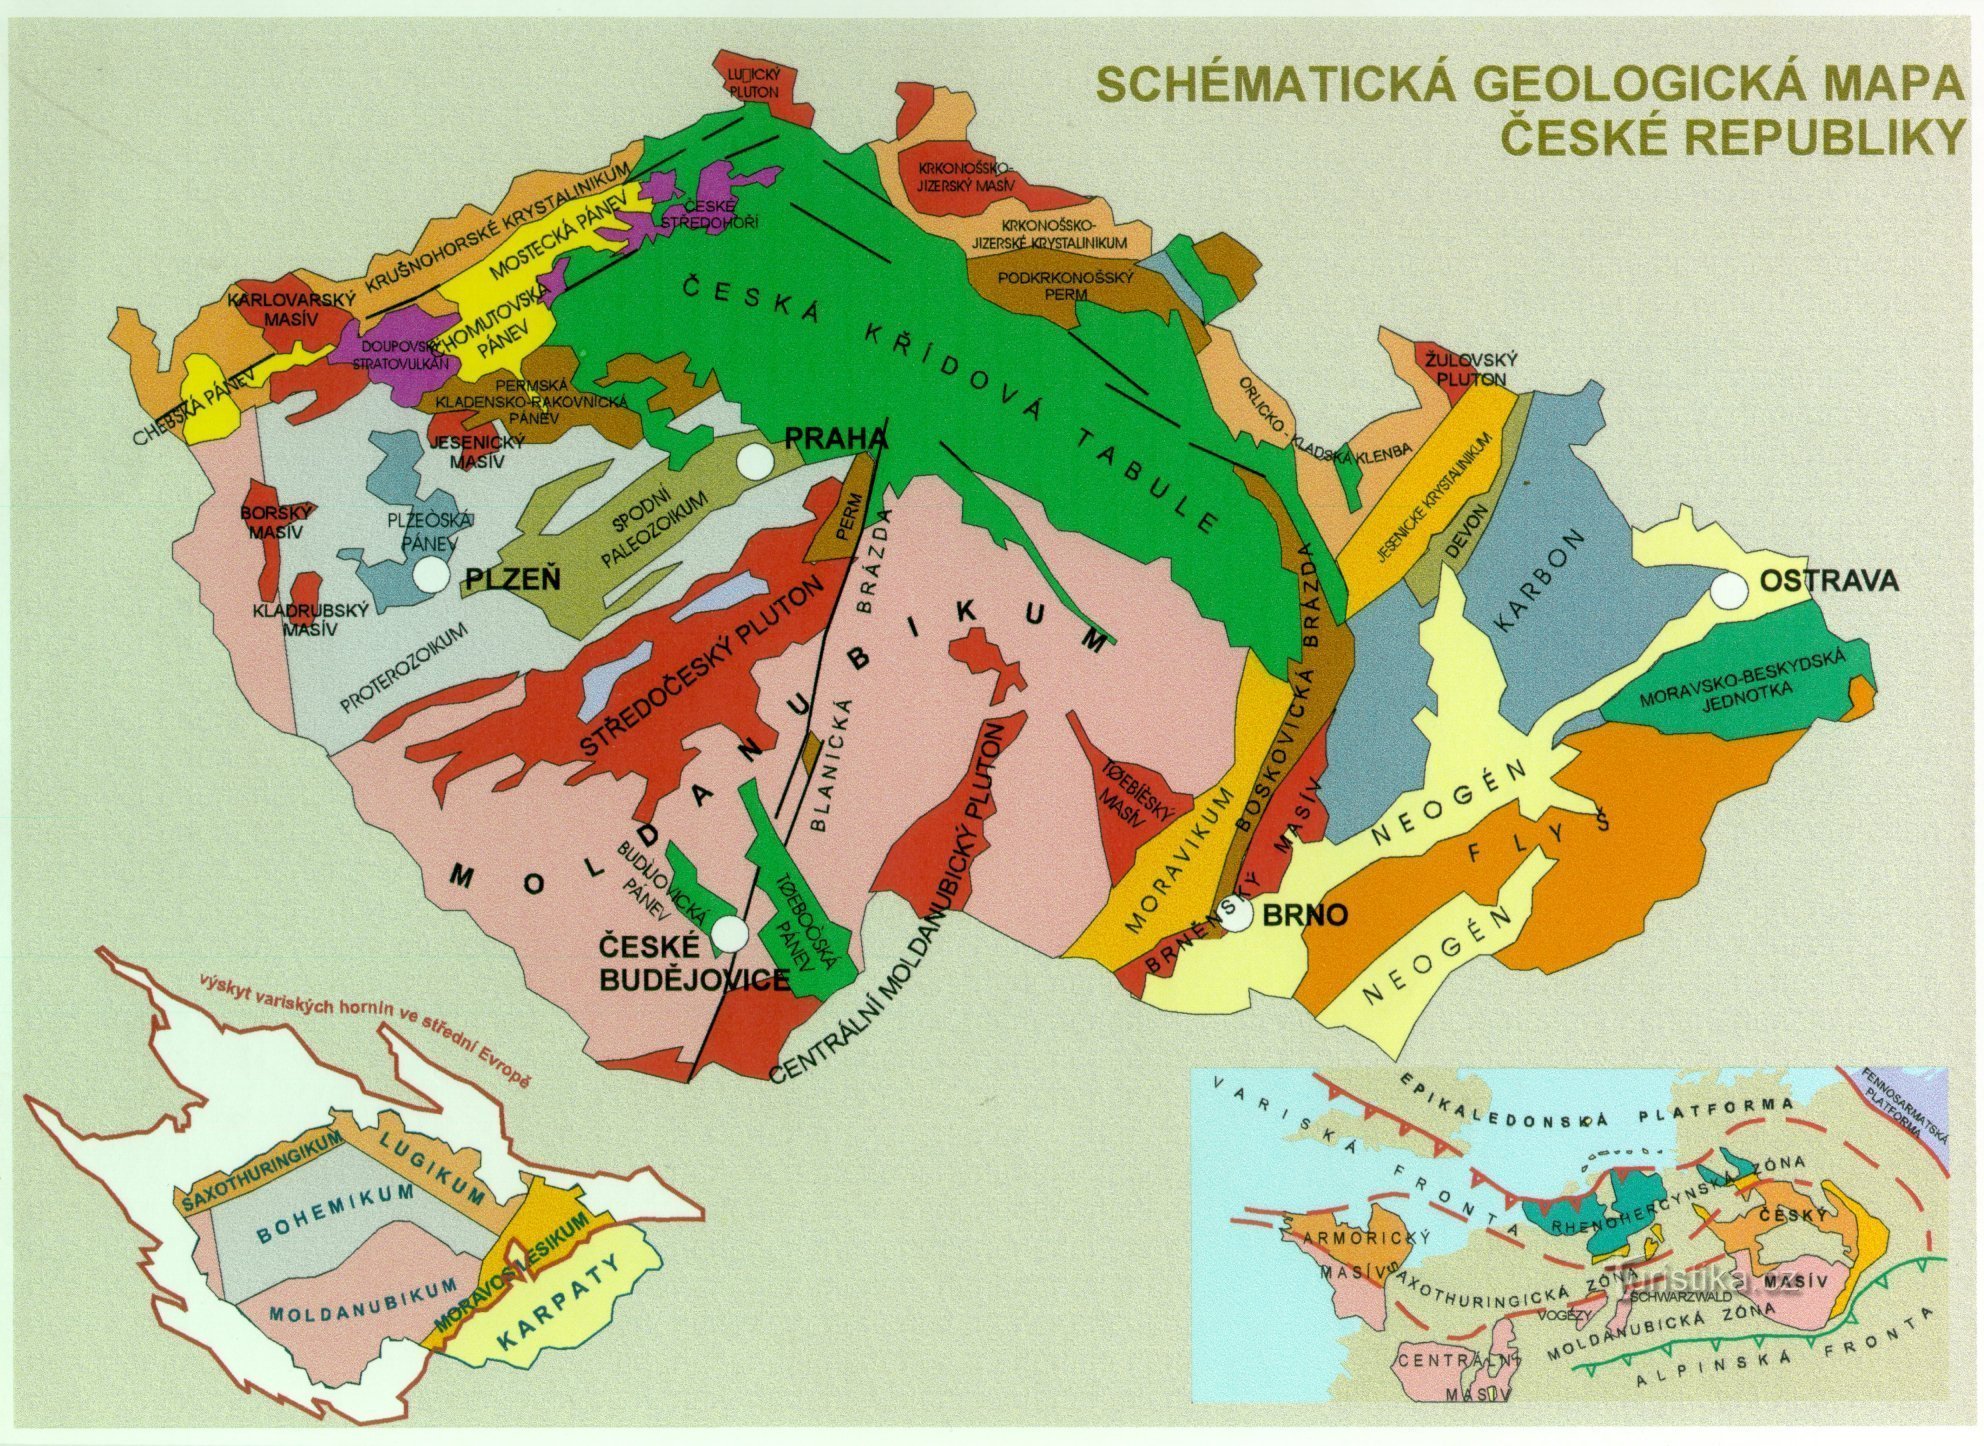 геологическая карта Чехии - доп.изображение к тексту (с https://www.ig.